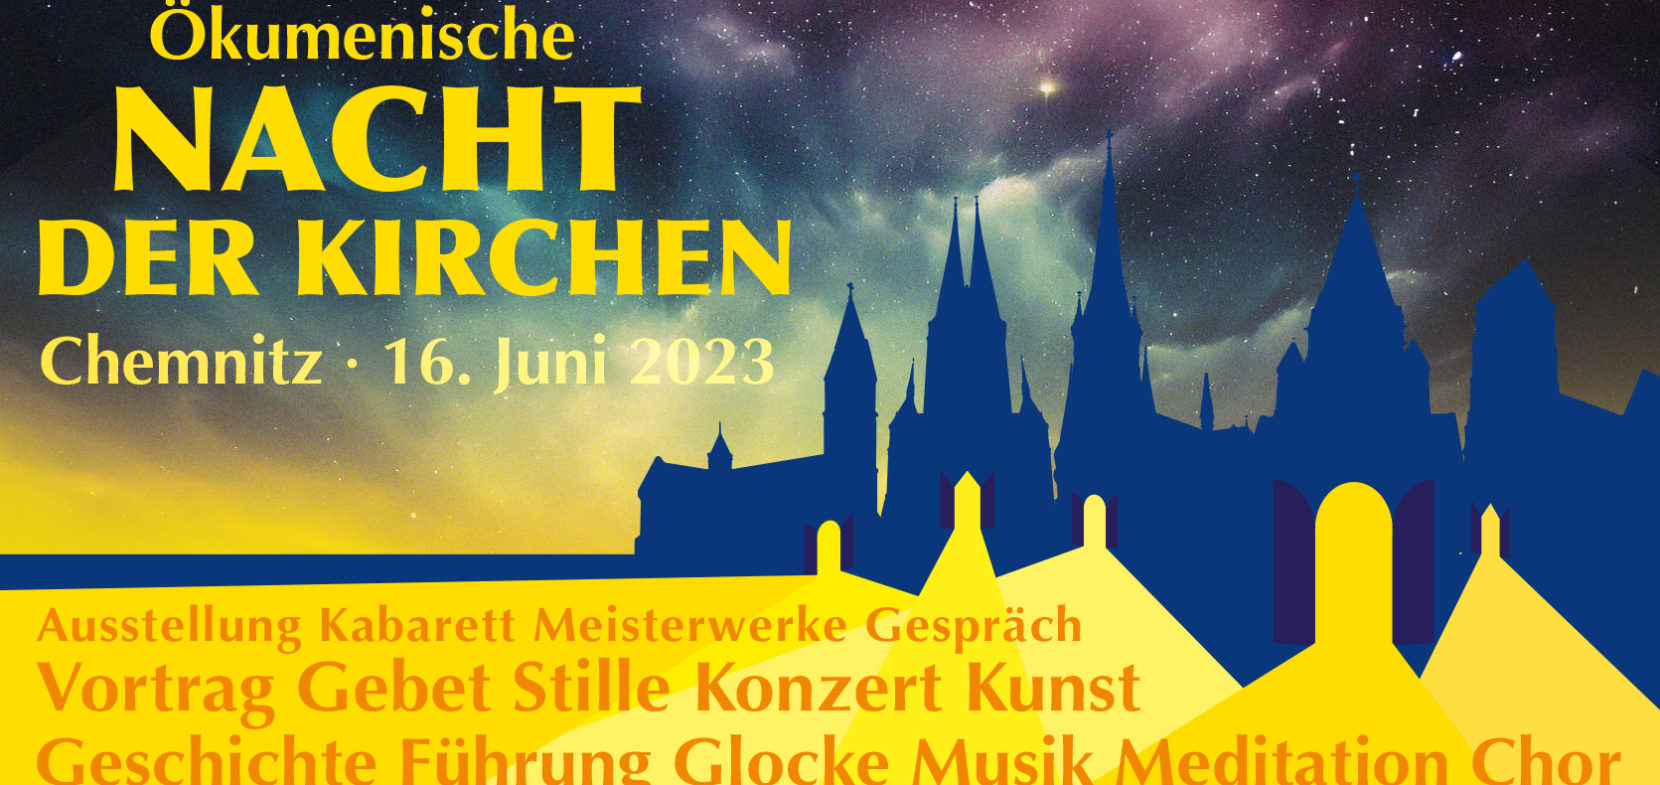 Programm Ökumenische Nacht der Kirchen 2023